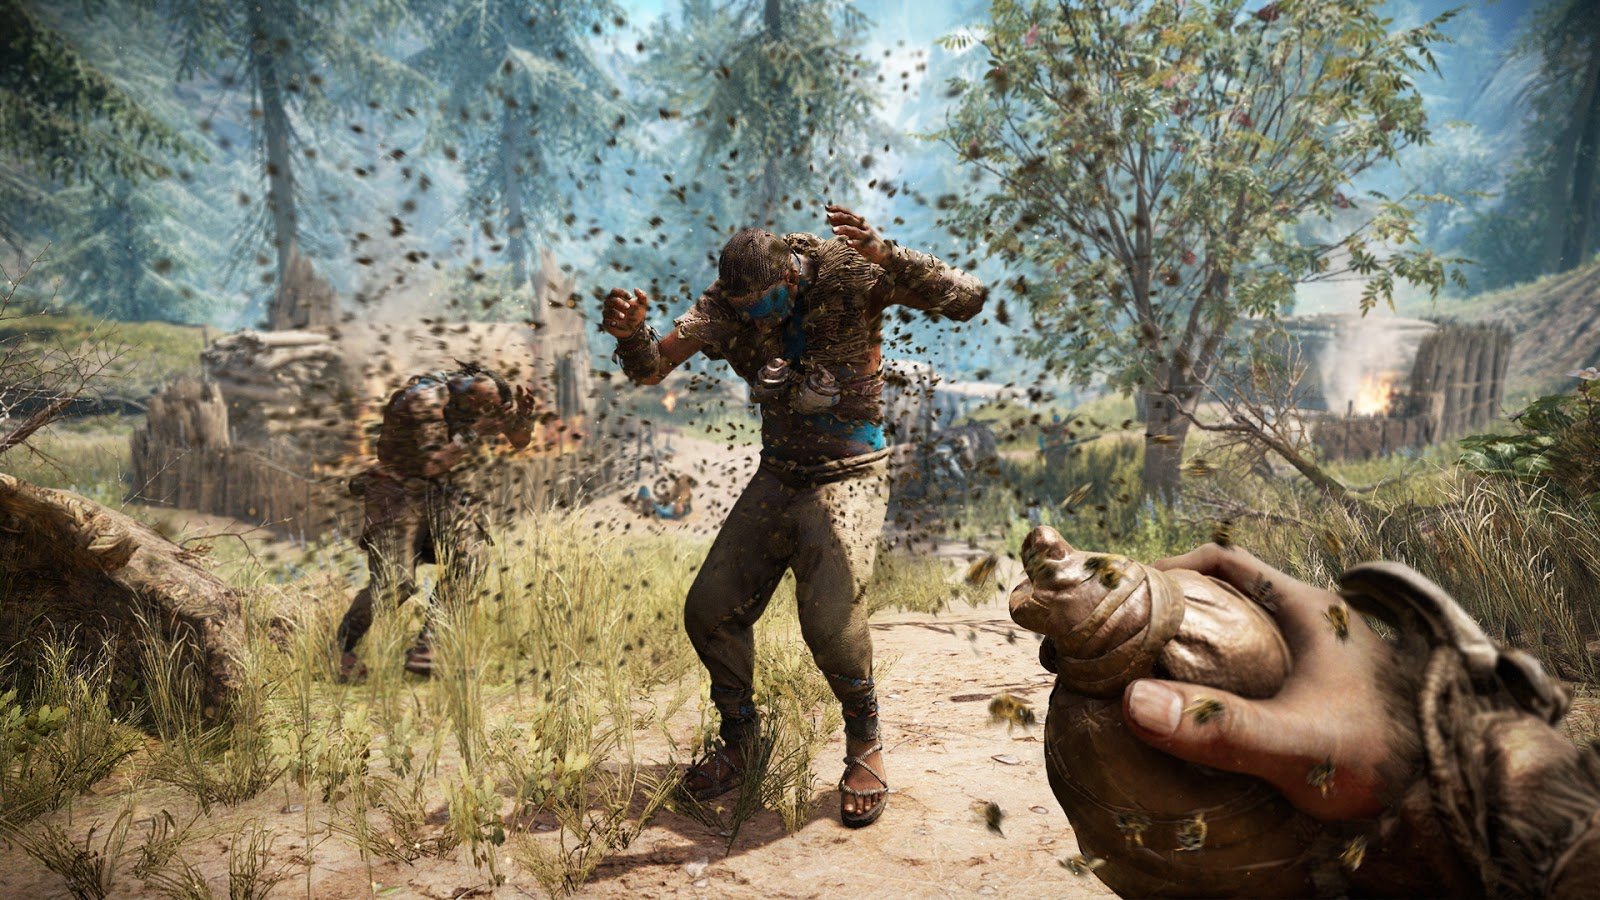 Far Cry 5: veja os requisitos oficiais para rodar o game no PC